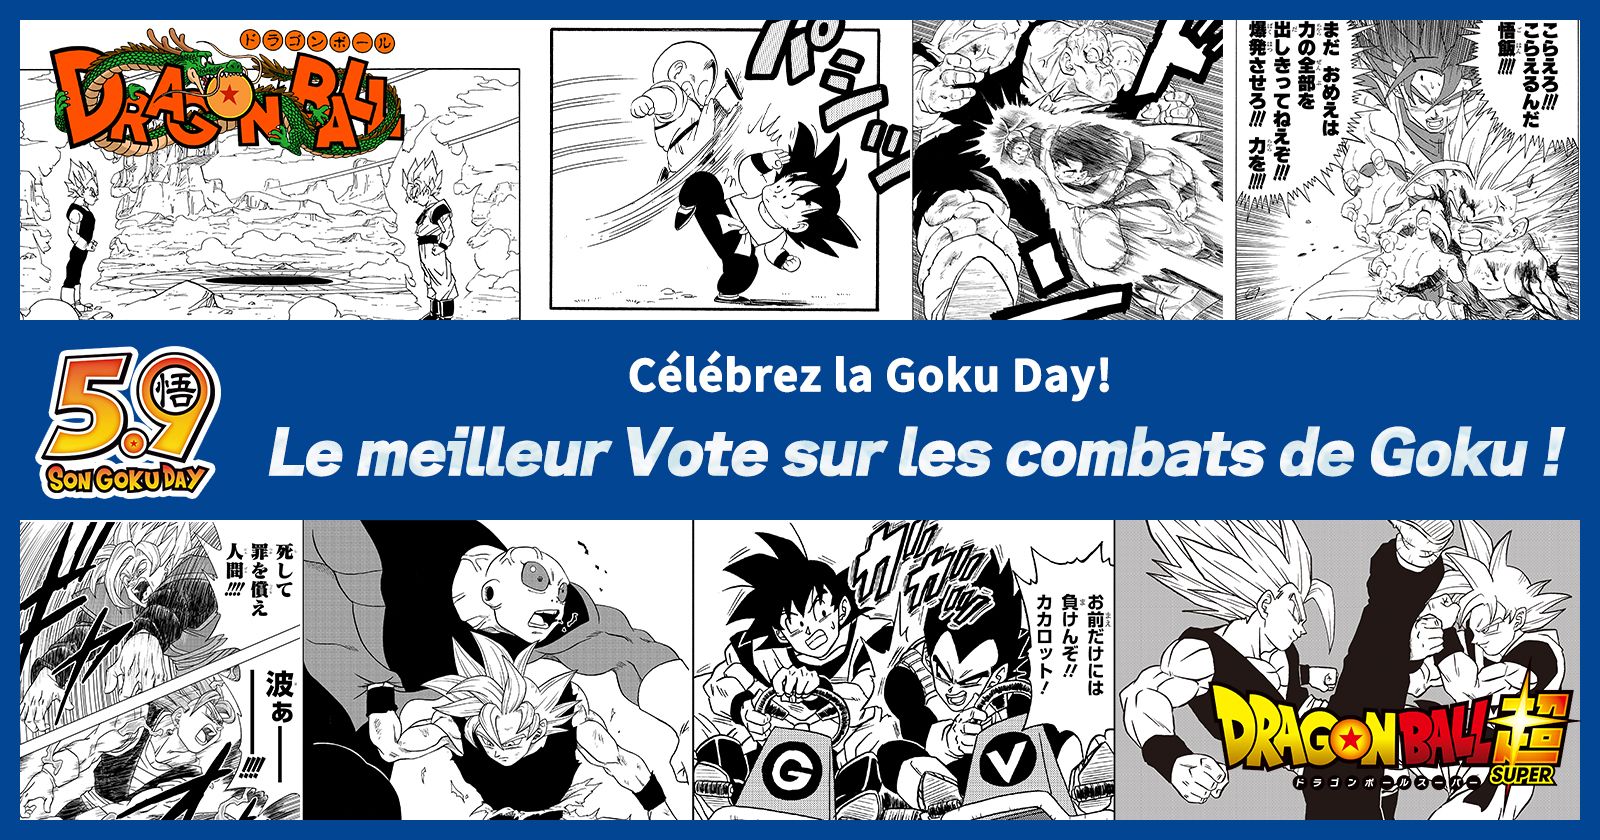 [Résumé] L'événement de célébration de la Goku Day « Le meilleur Vote sur le combat de Goku » est arrivé ! Le combat pour la première place sera transformé en marchandise !